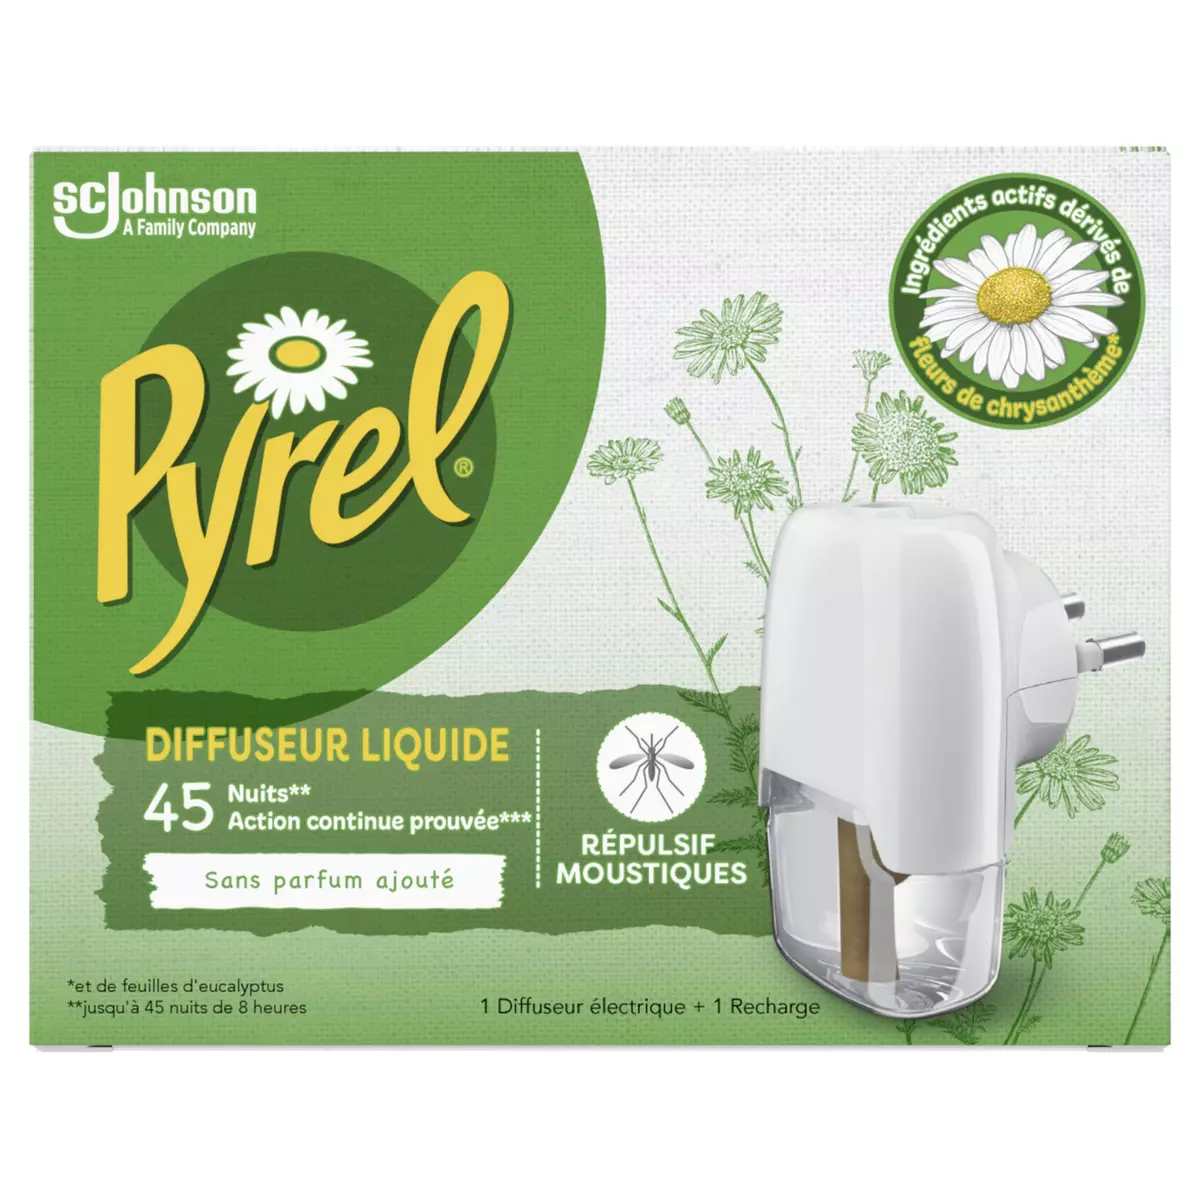 PYREL Diffuseur électrique liquide anti-moustiques 1 diffuseur +1 recharge